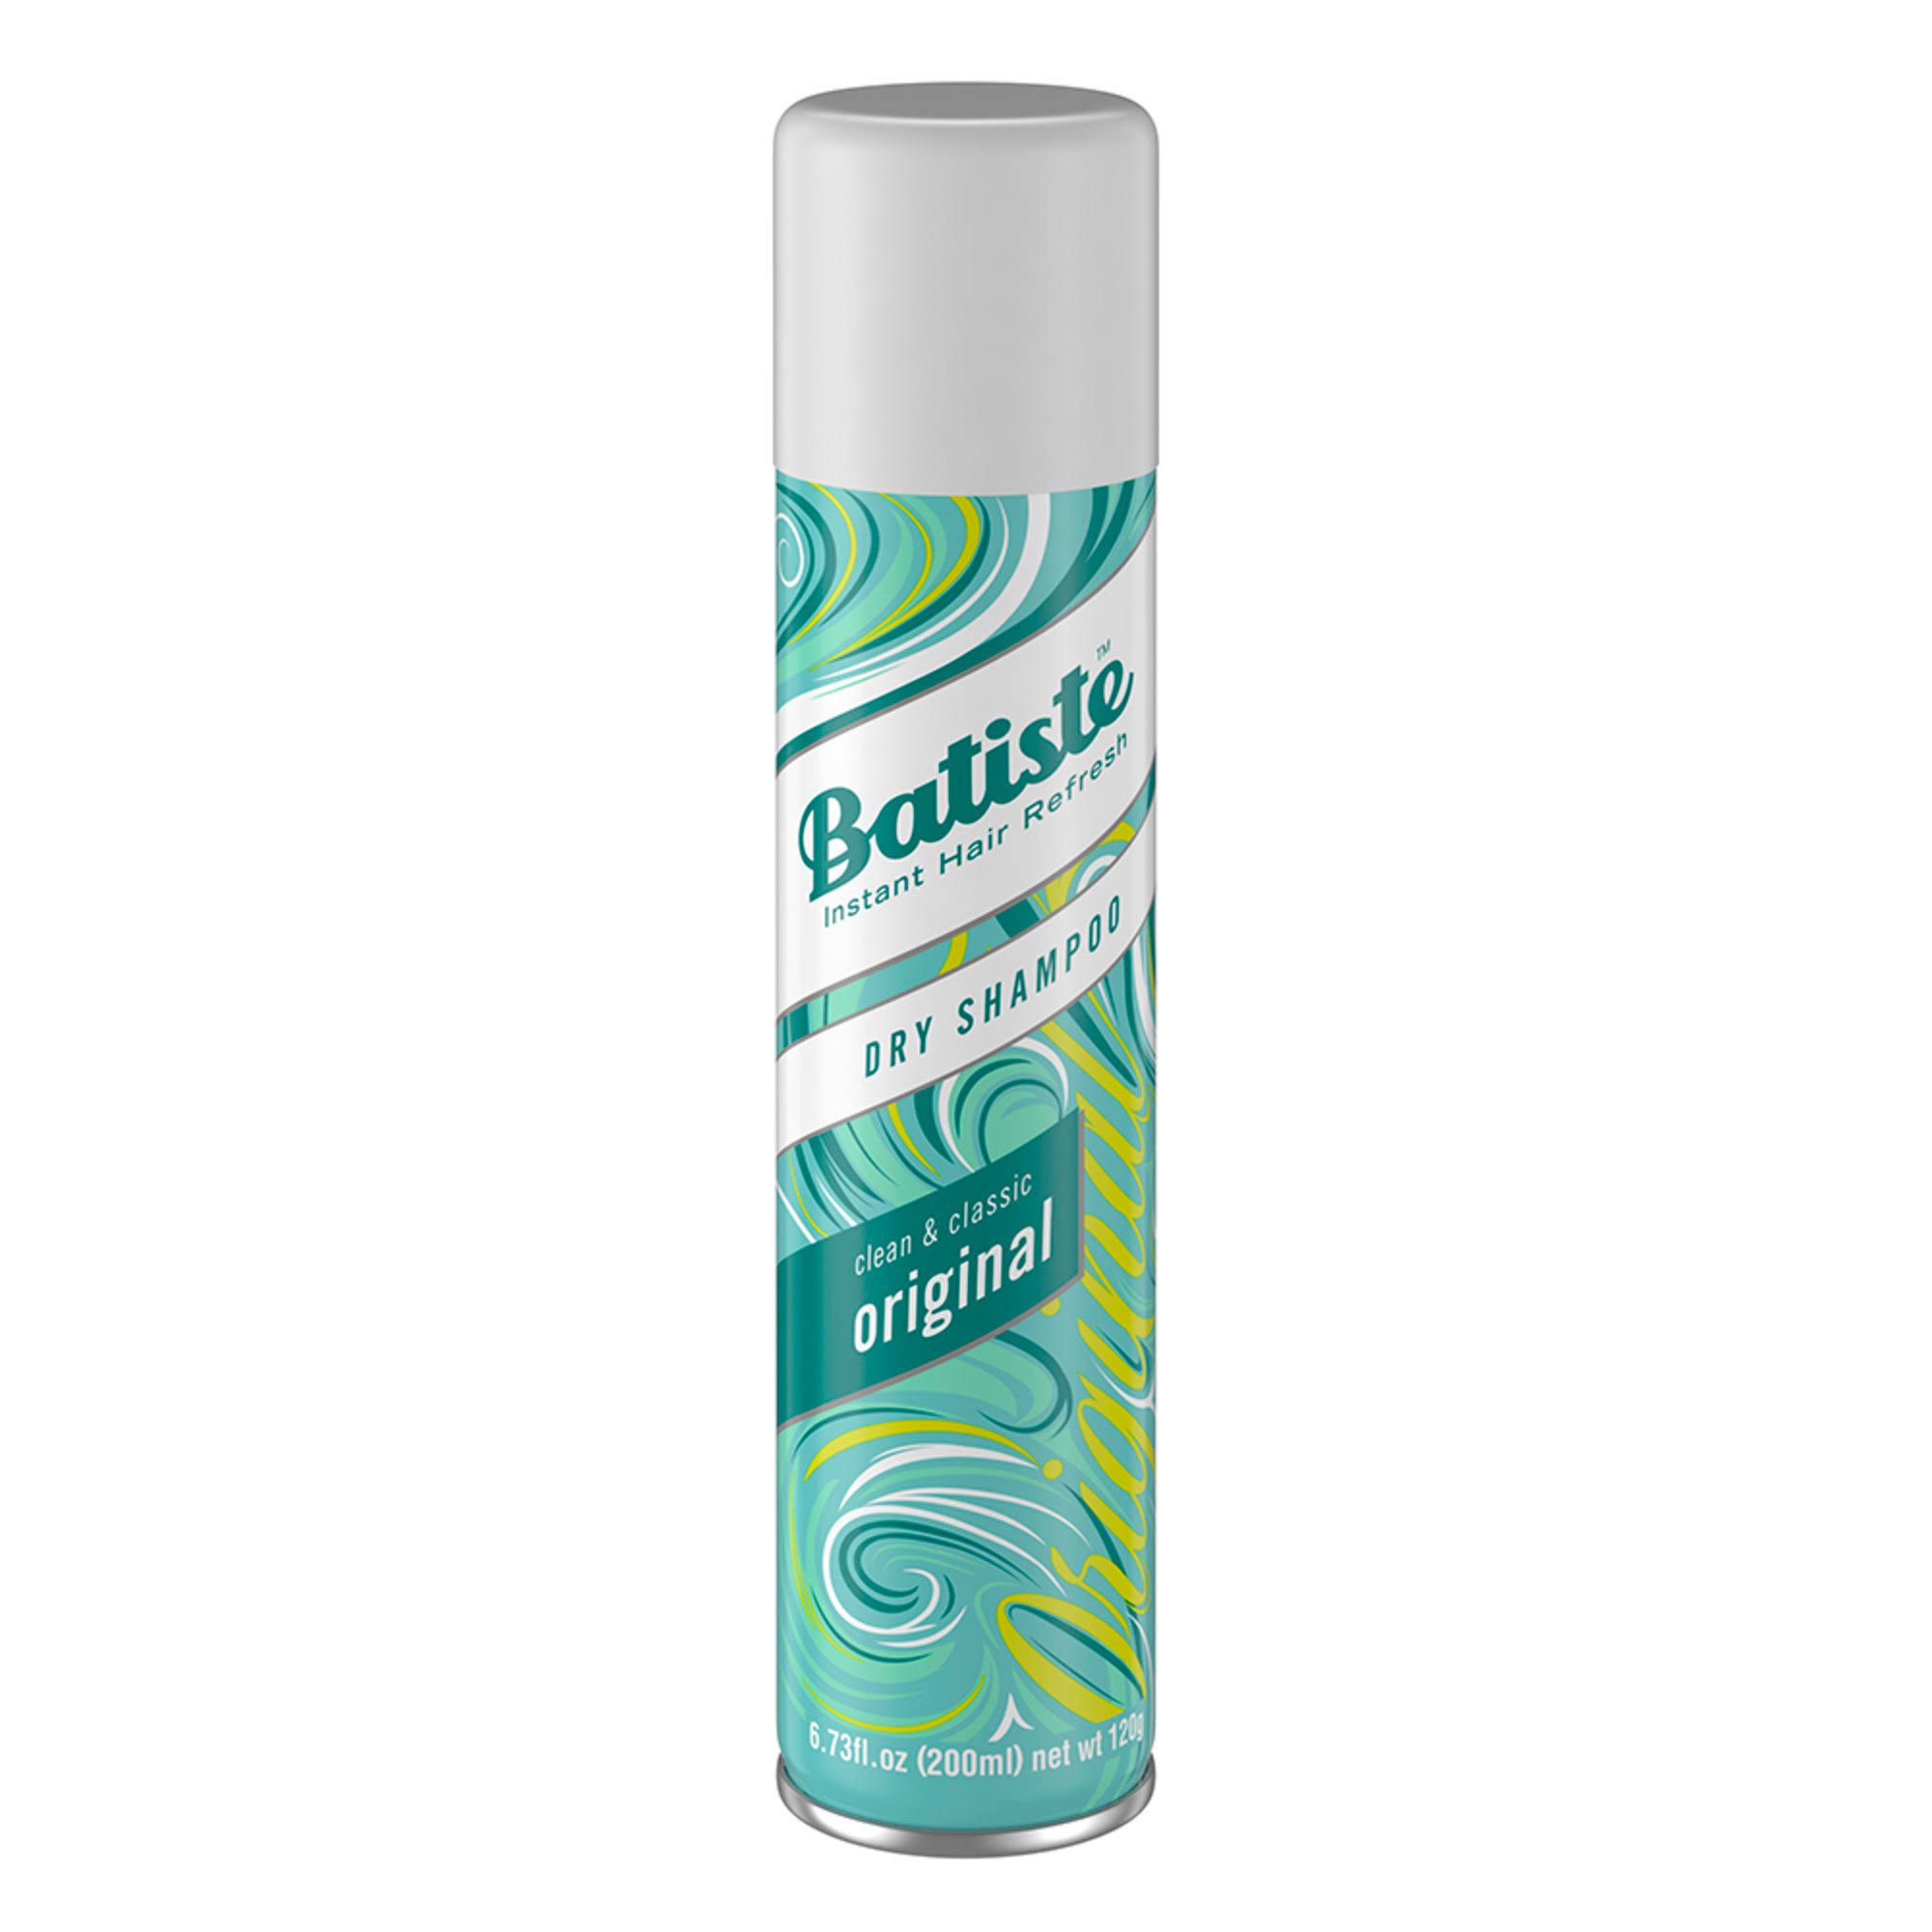 Batiste Dry Shampoo - Original Scent, 200ml